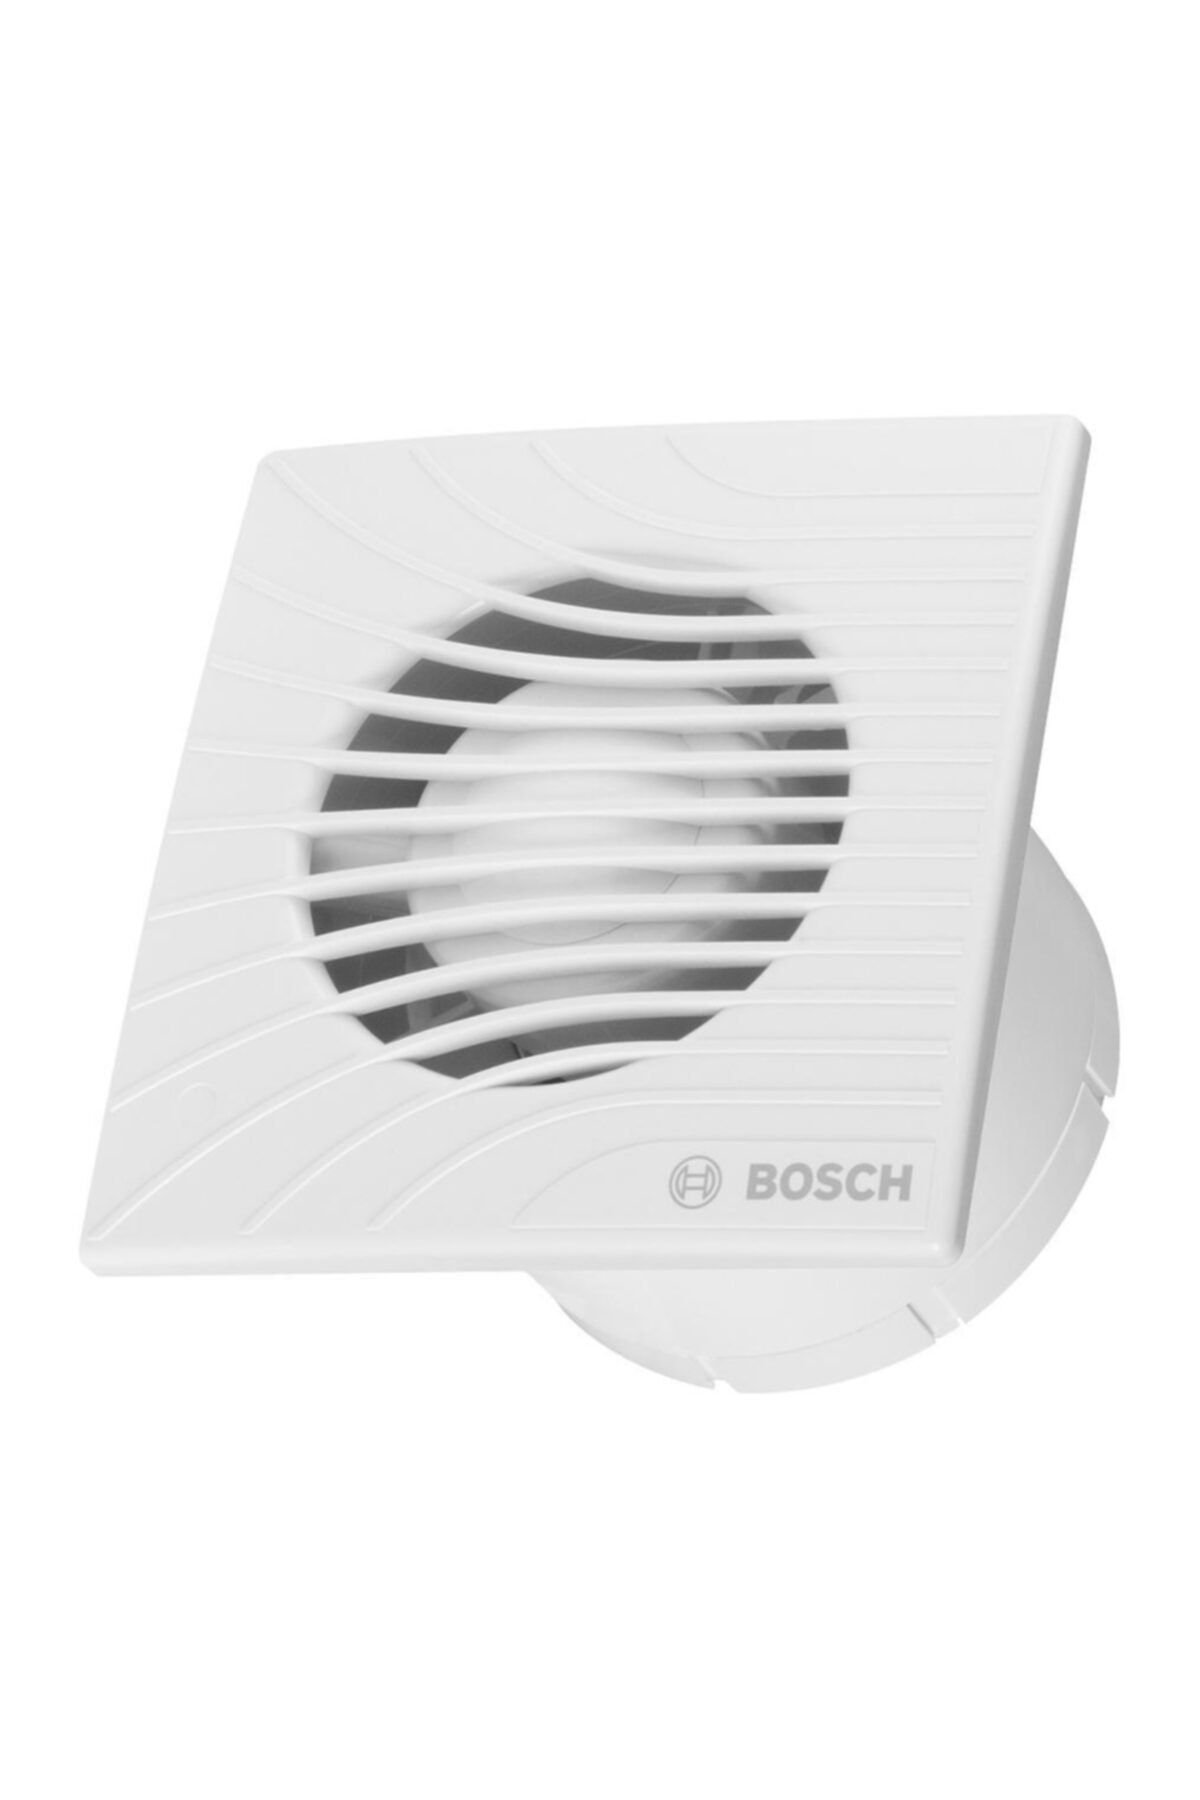 Bosch Banyo Havalandırma Fanı 1300 Serisi (100 Mm)